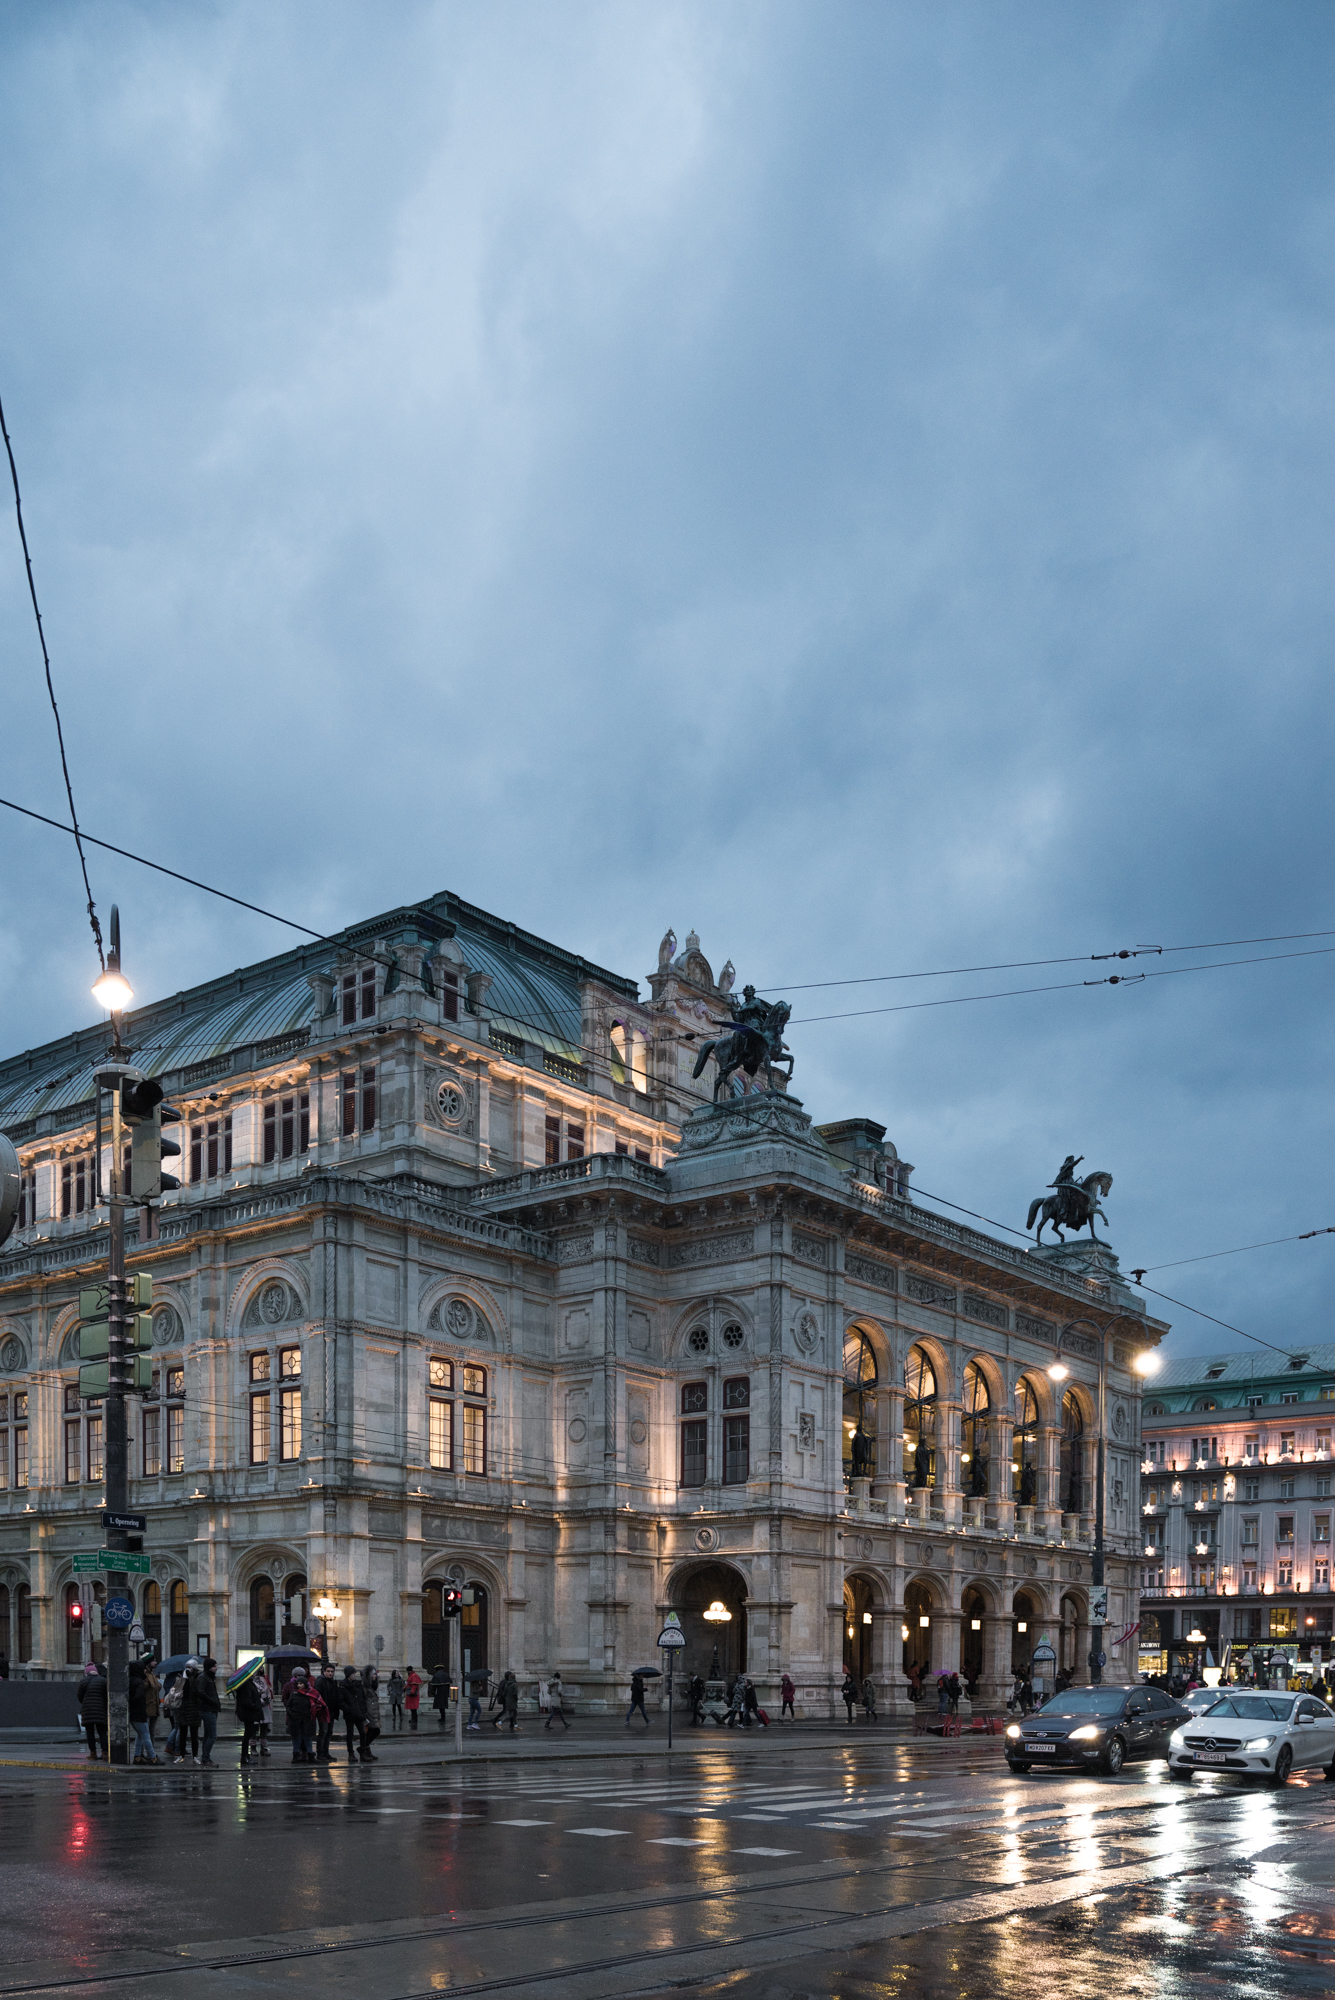 Vienna's Opera hall